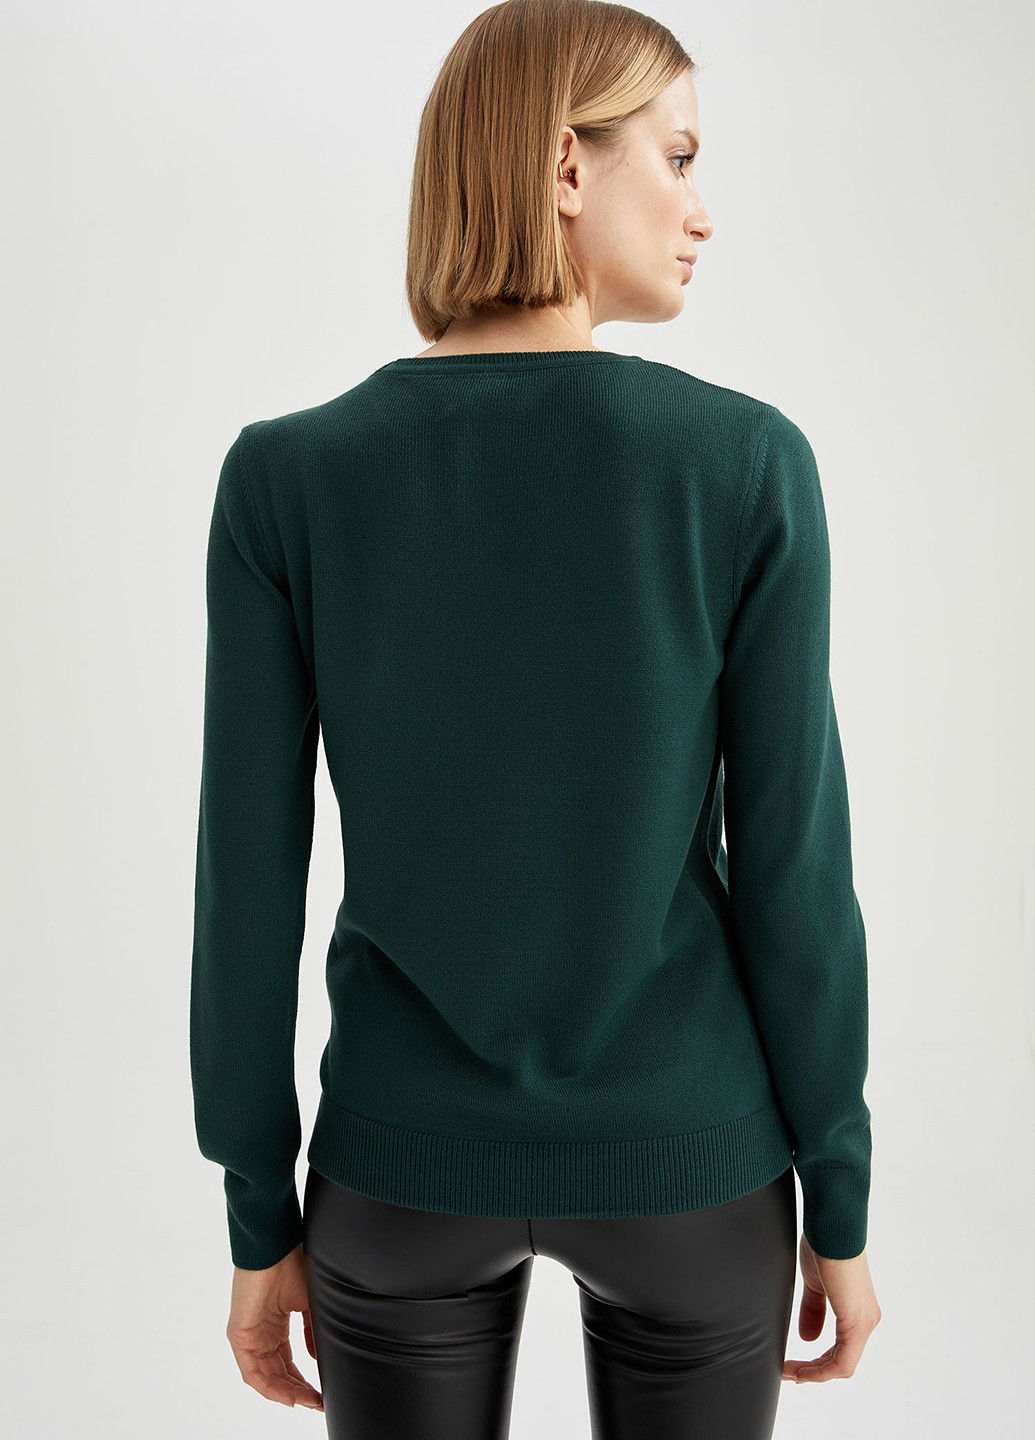 Темно-зеленый демисезонный свитер джемпер DeFacto